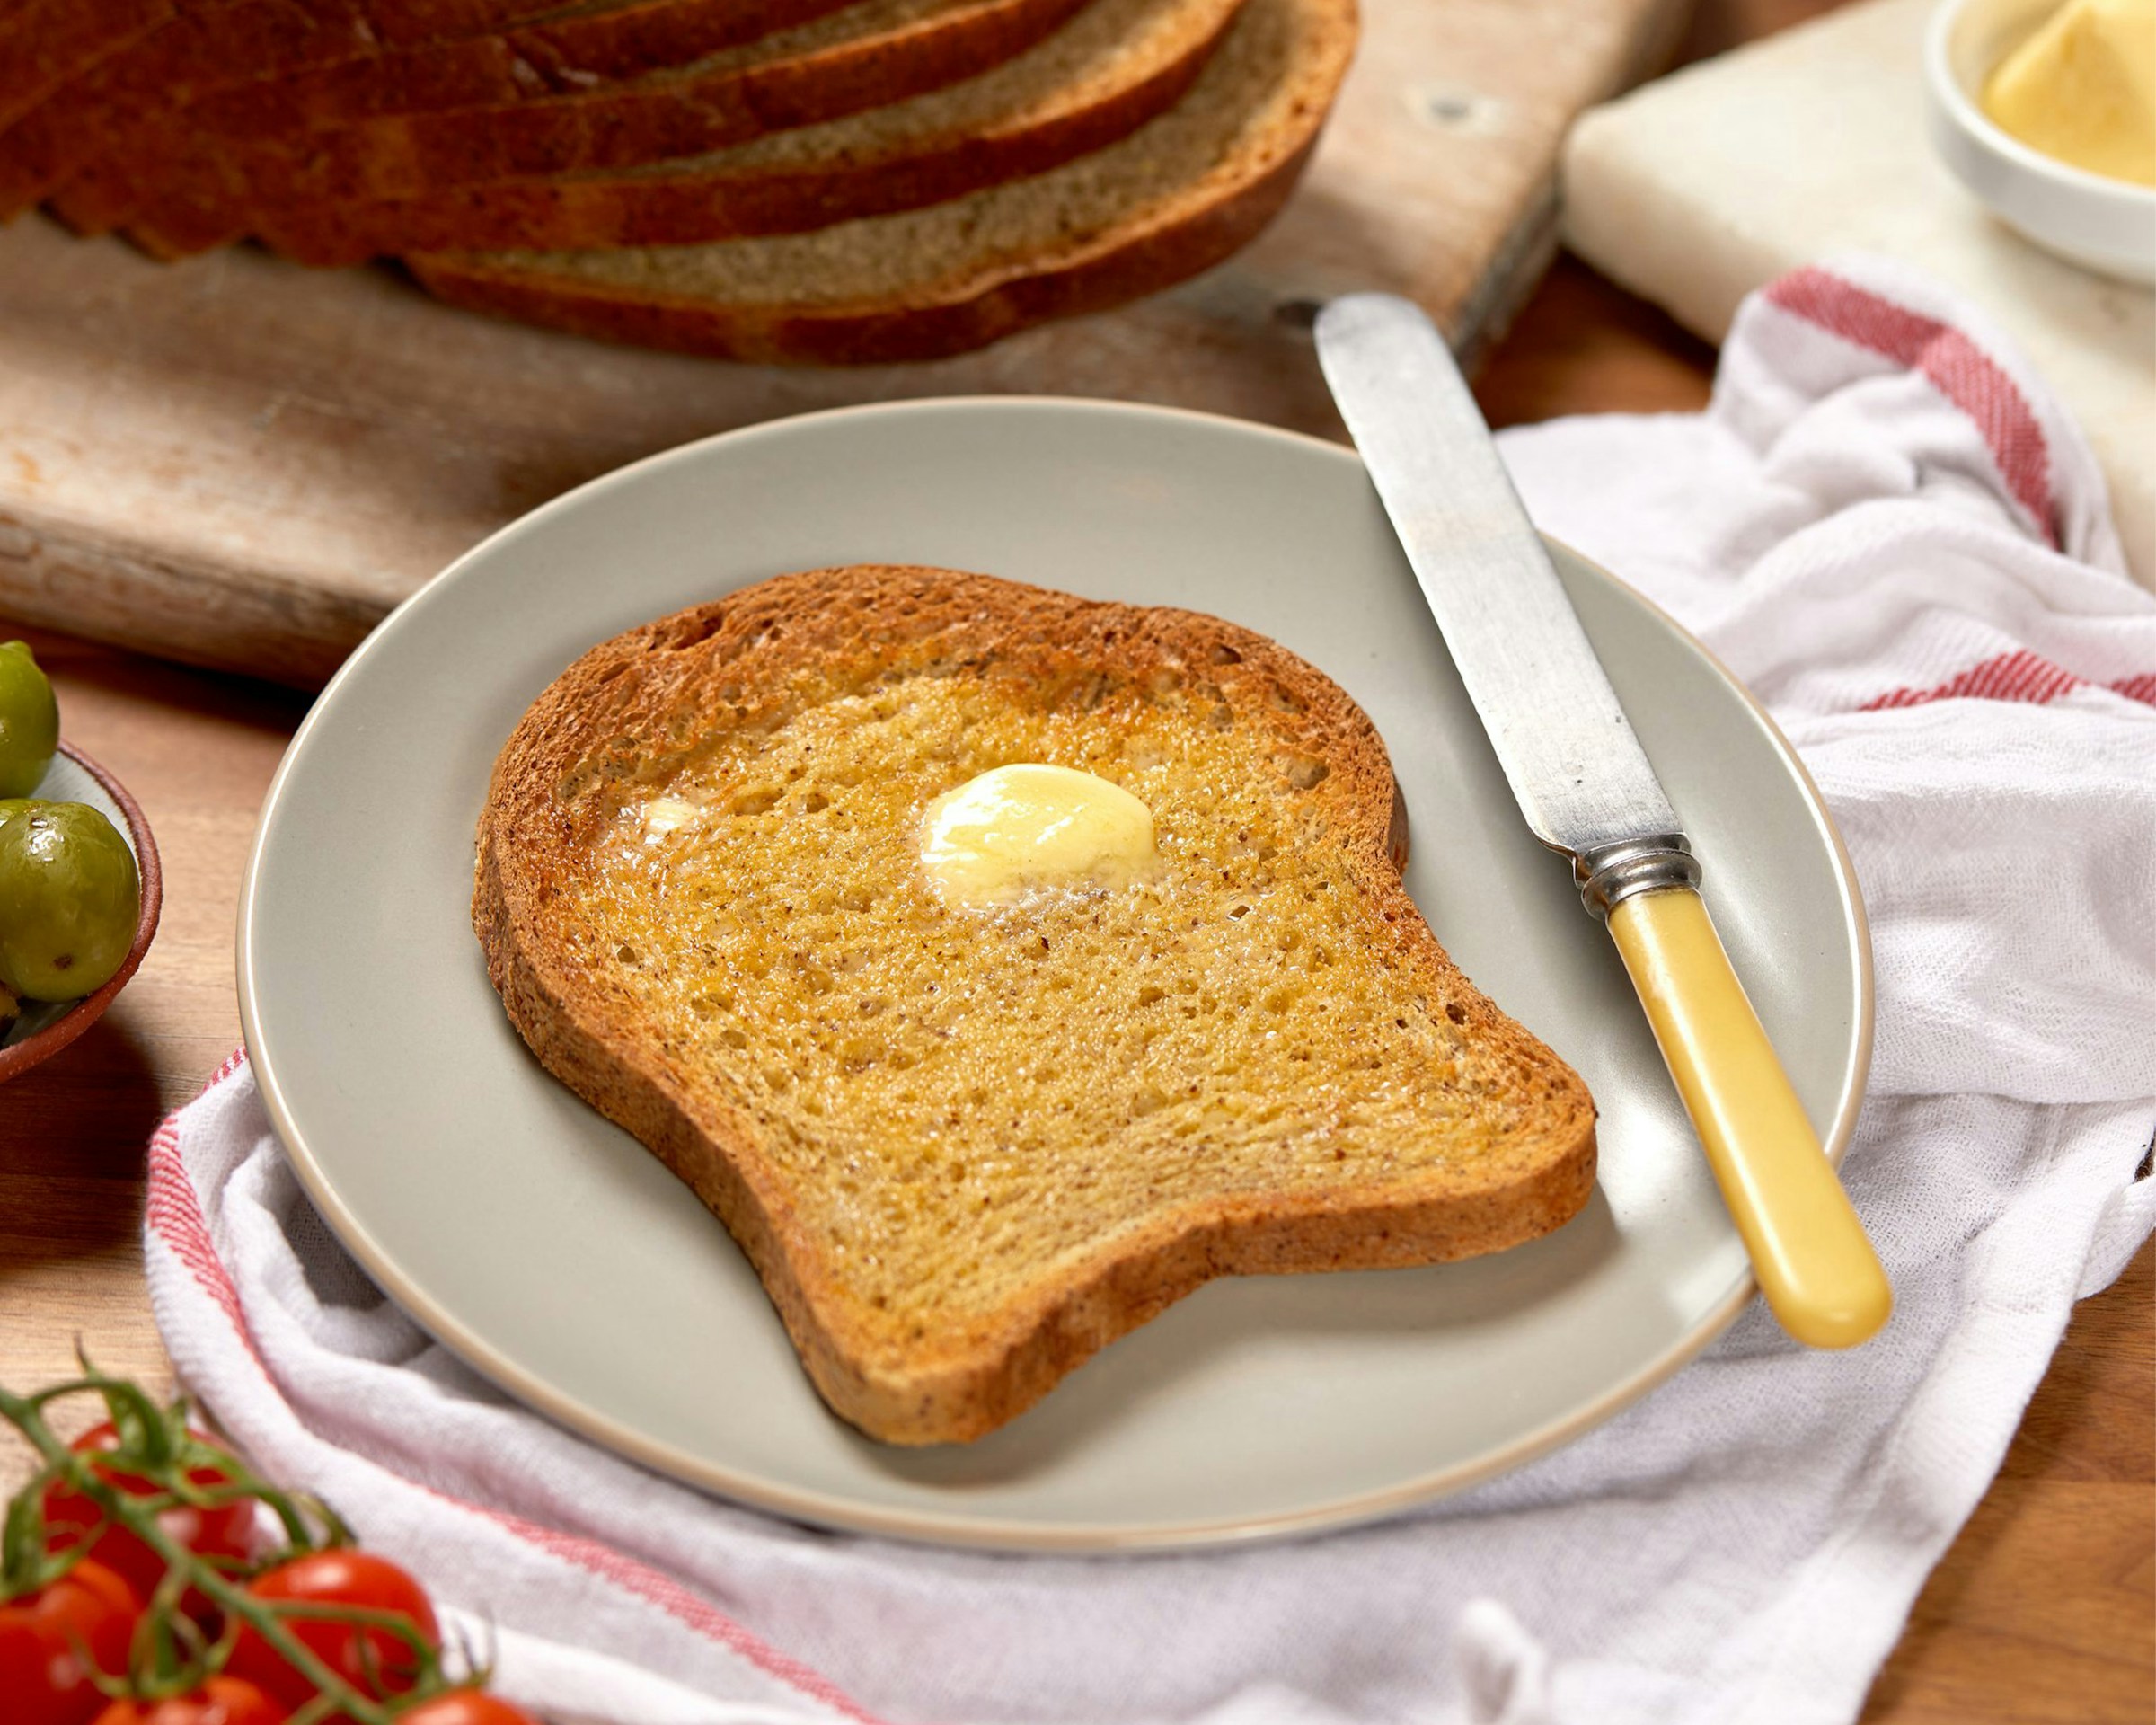 Toast beurré sur une assiette | Source : Unsplash